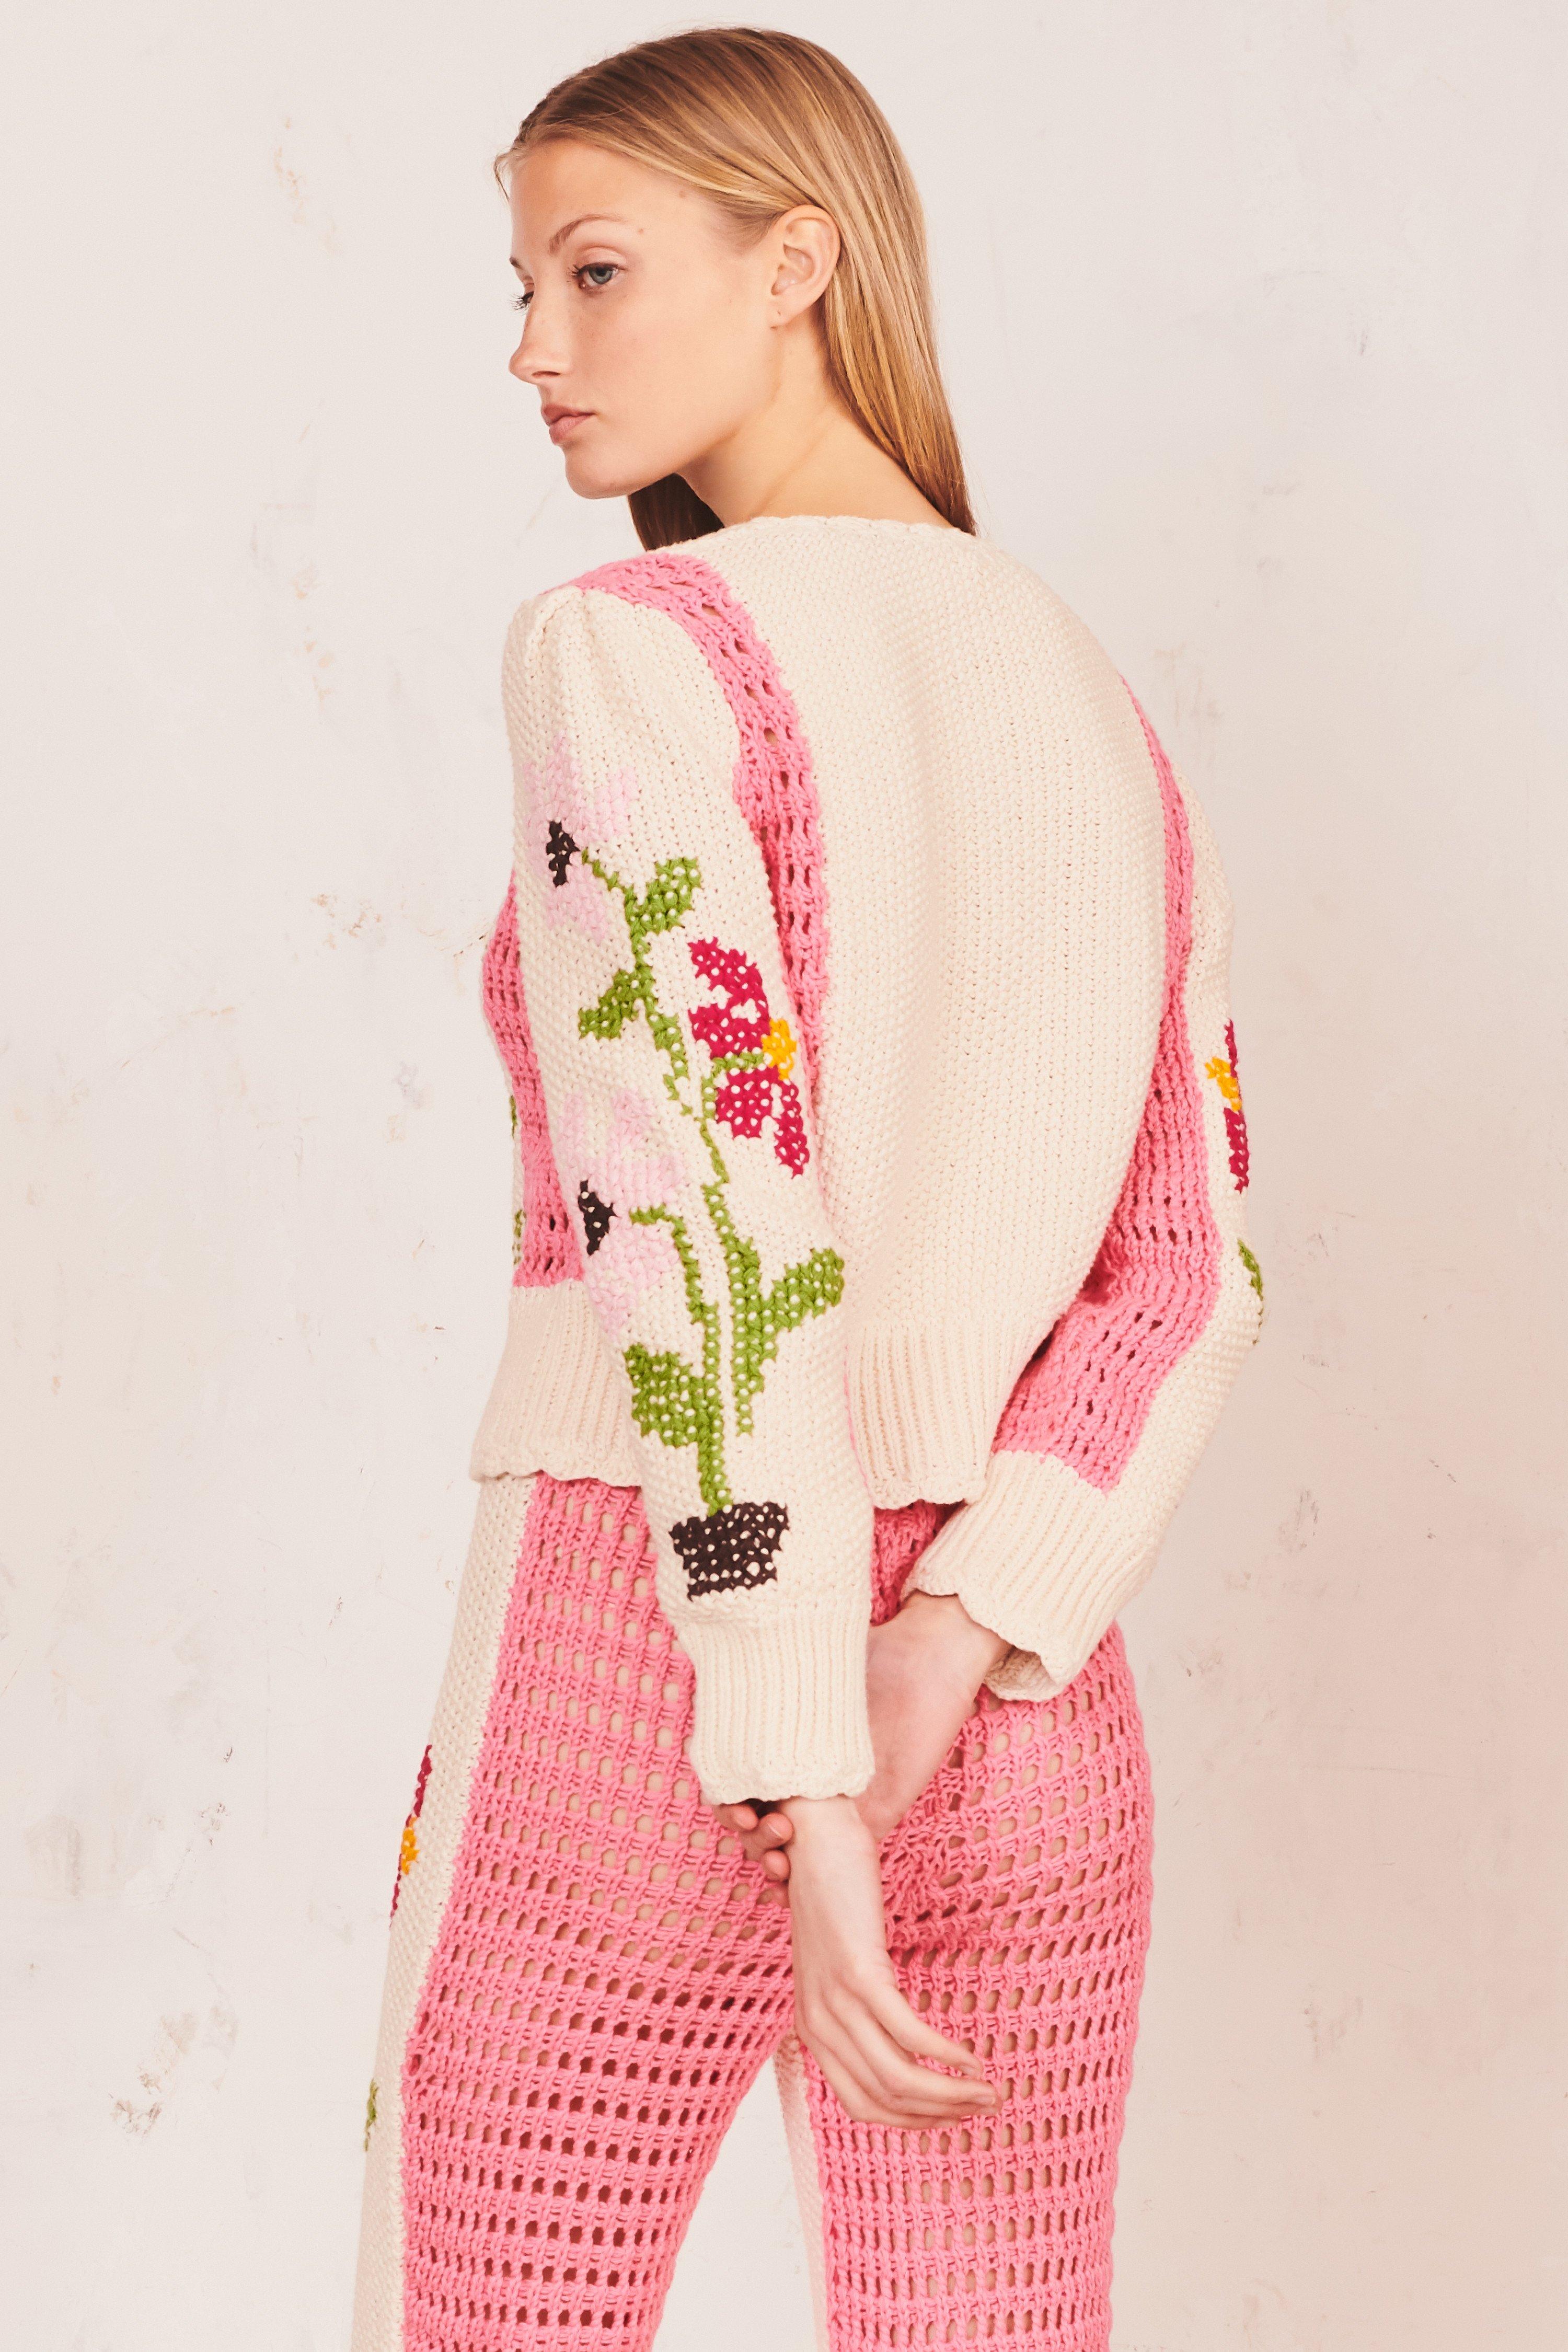 LoveShackFancy Flossie Sweater in Pink Daisy (Pink) - Lyst